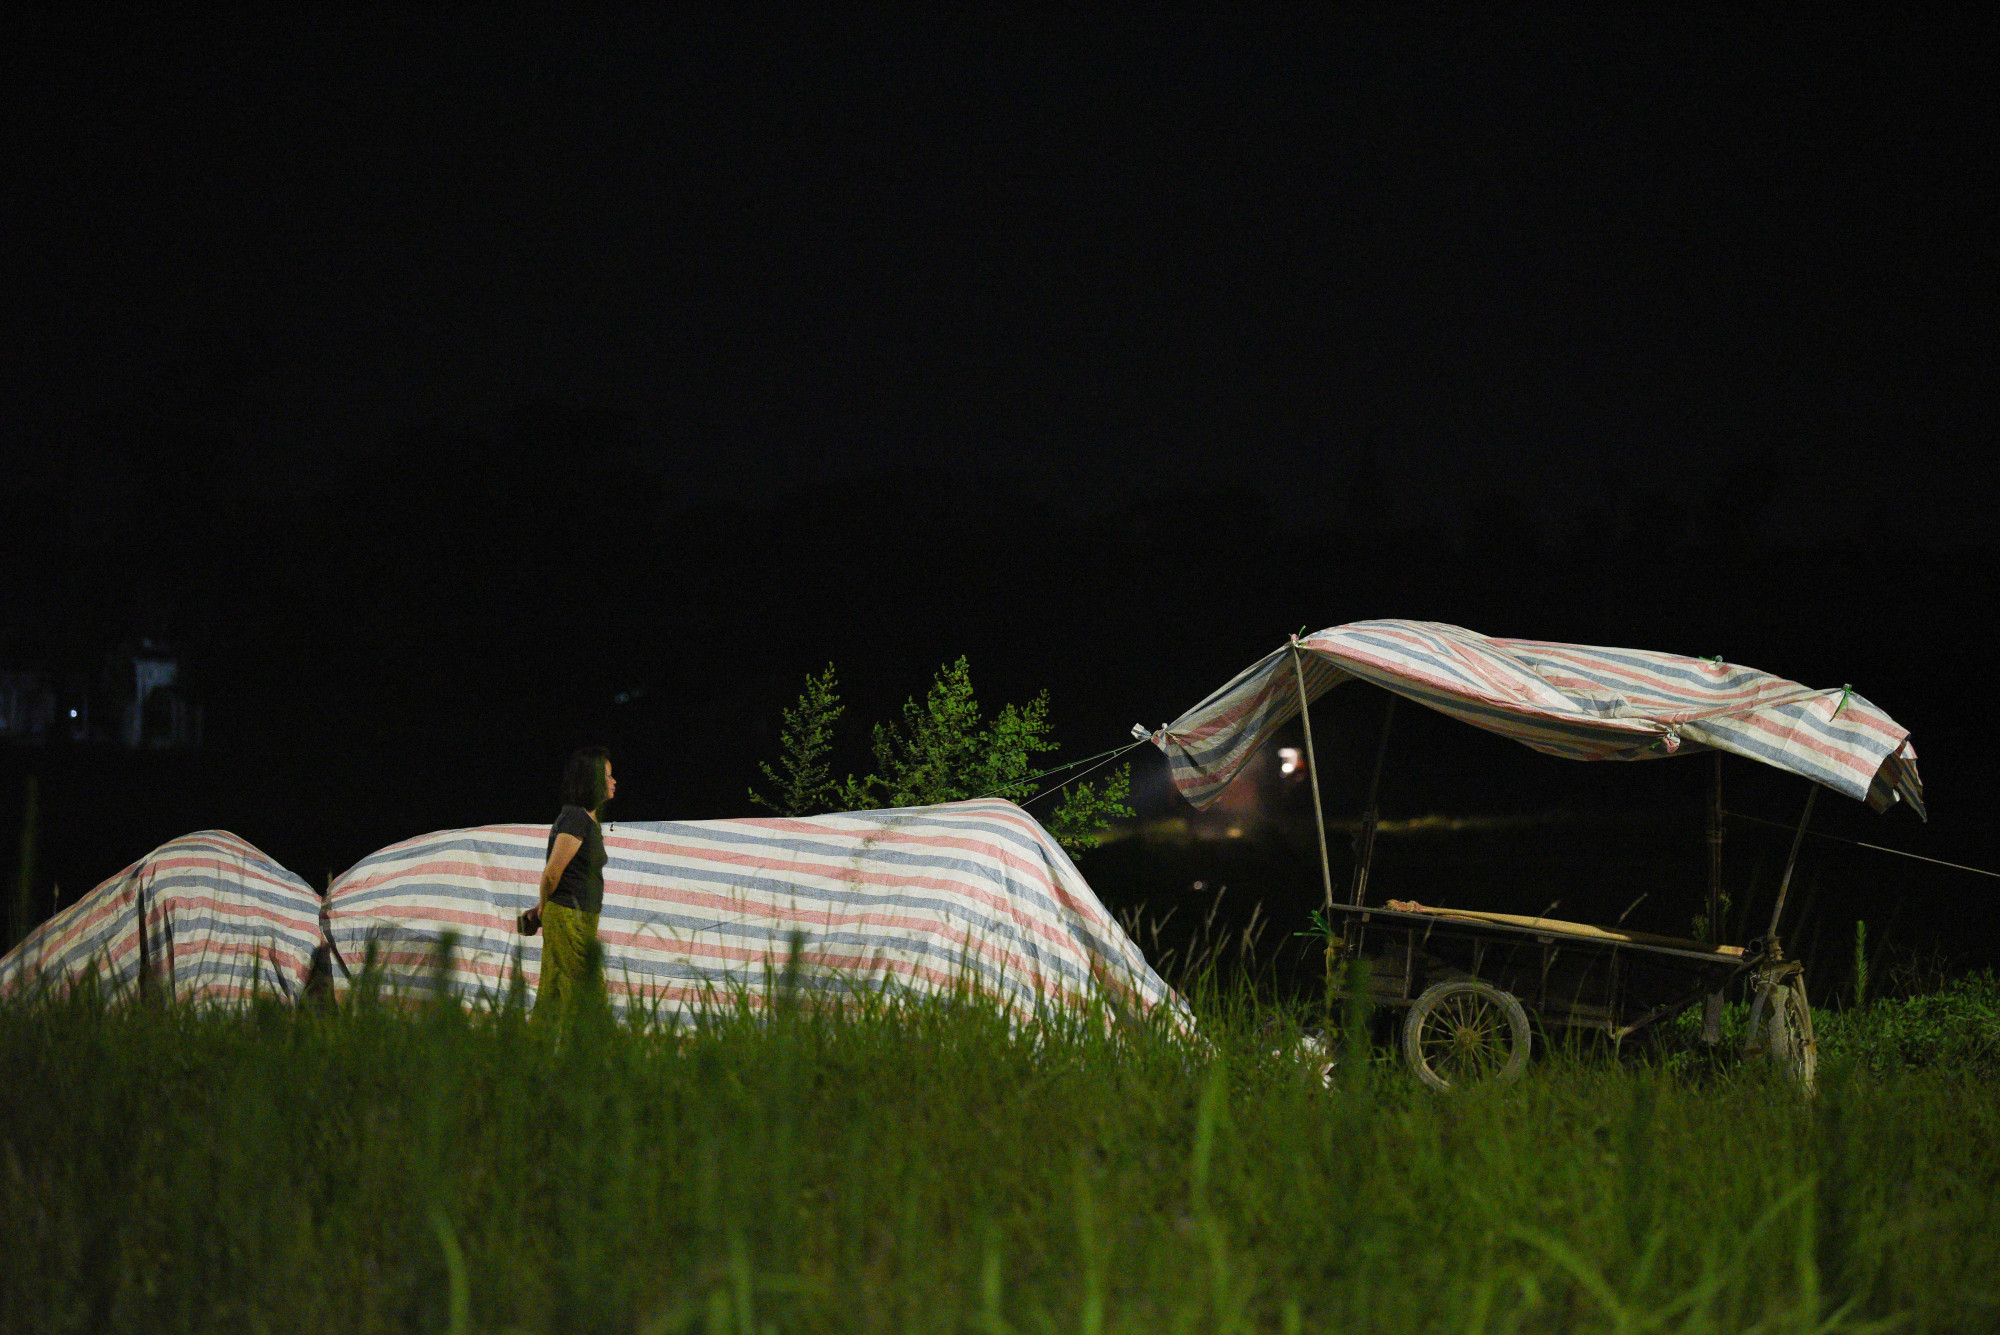 Tại 2 bên vỉa hè đường nhiều những lều tạm bợ được người dân dựng lên để trông lúa vào ban đêm.